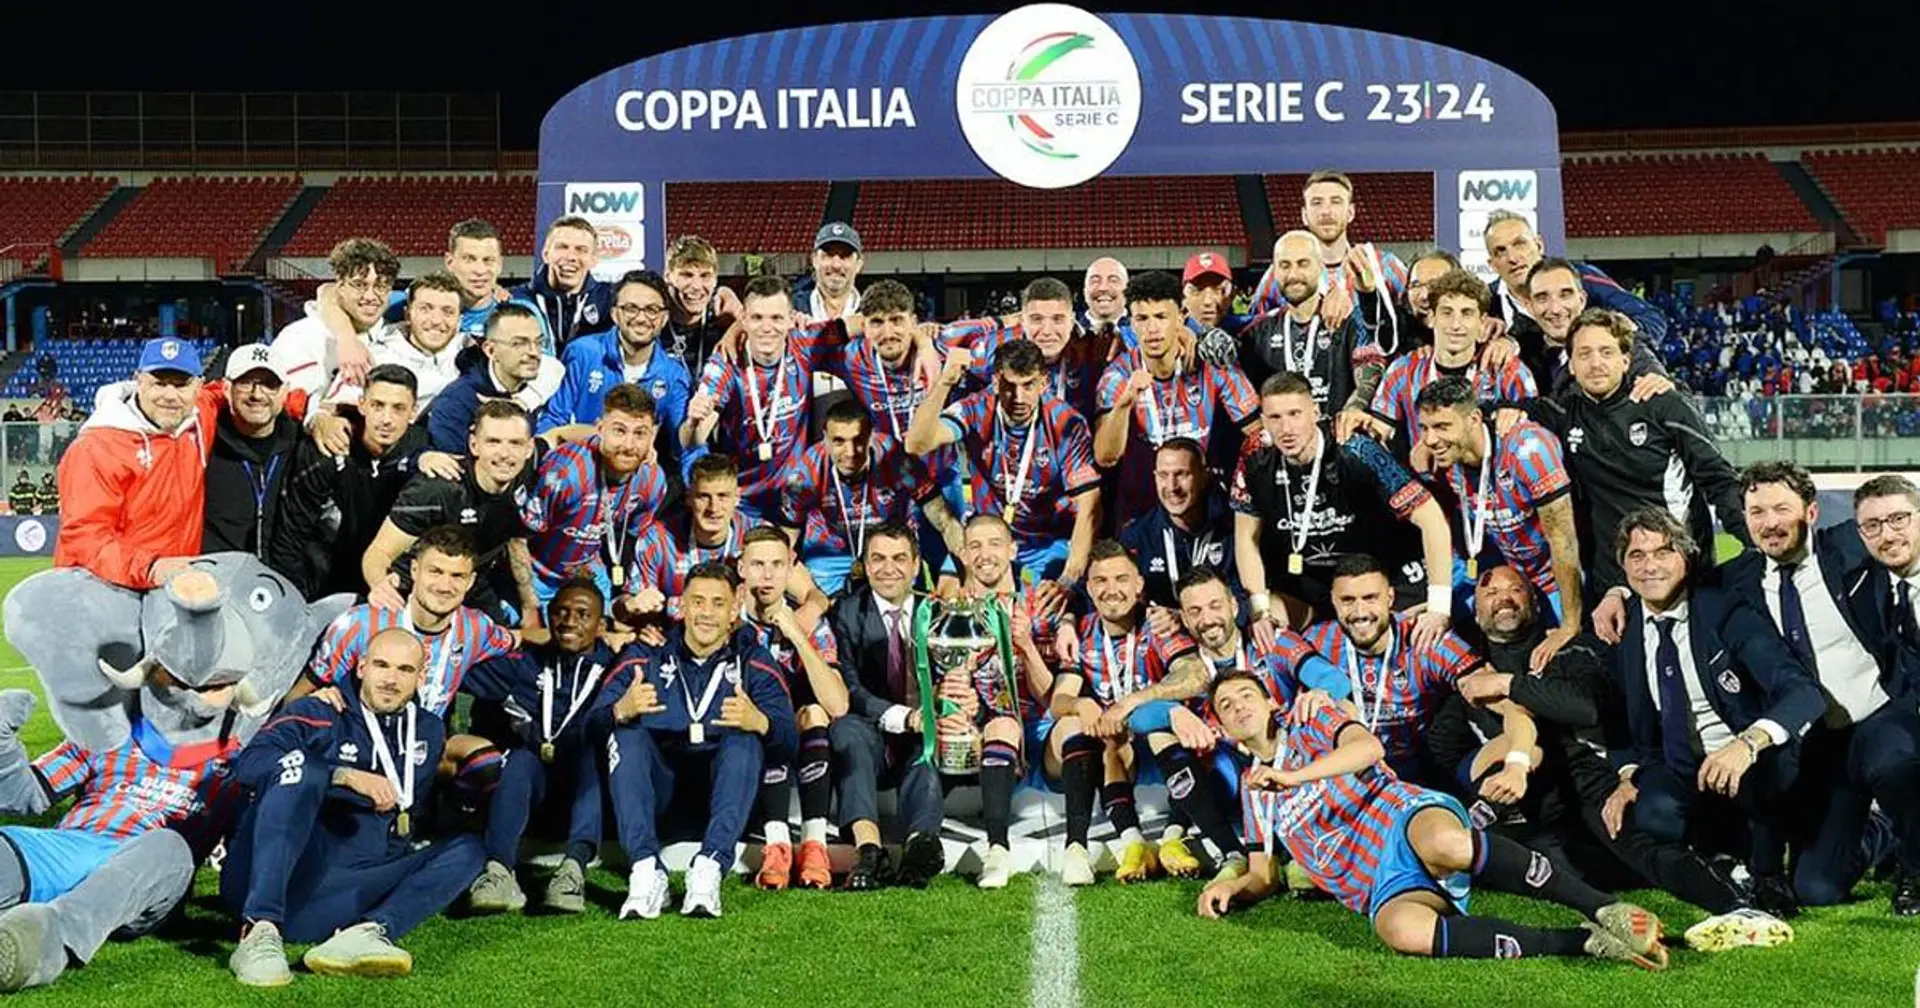 Coppa Italia Serie C, il Catania fa festa: battuto il Padova ai tempi supplementari, decisivo Costantino al 120'